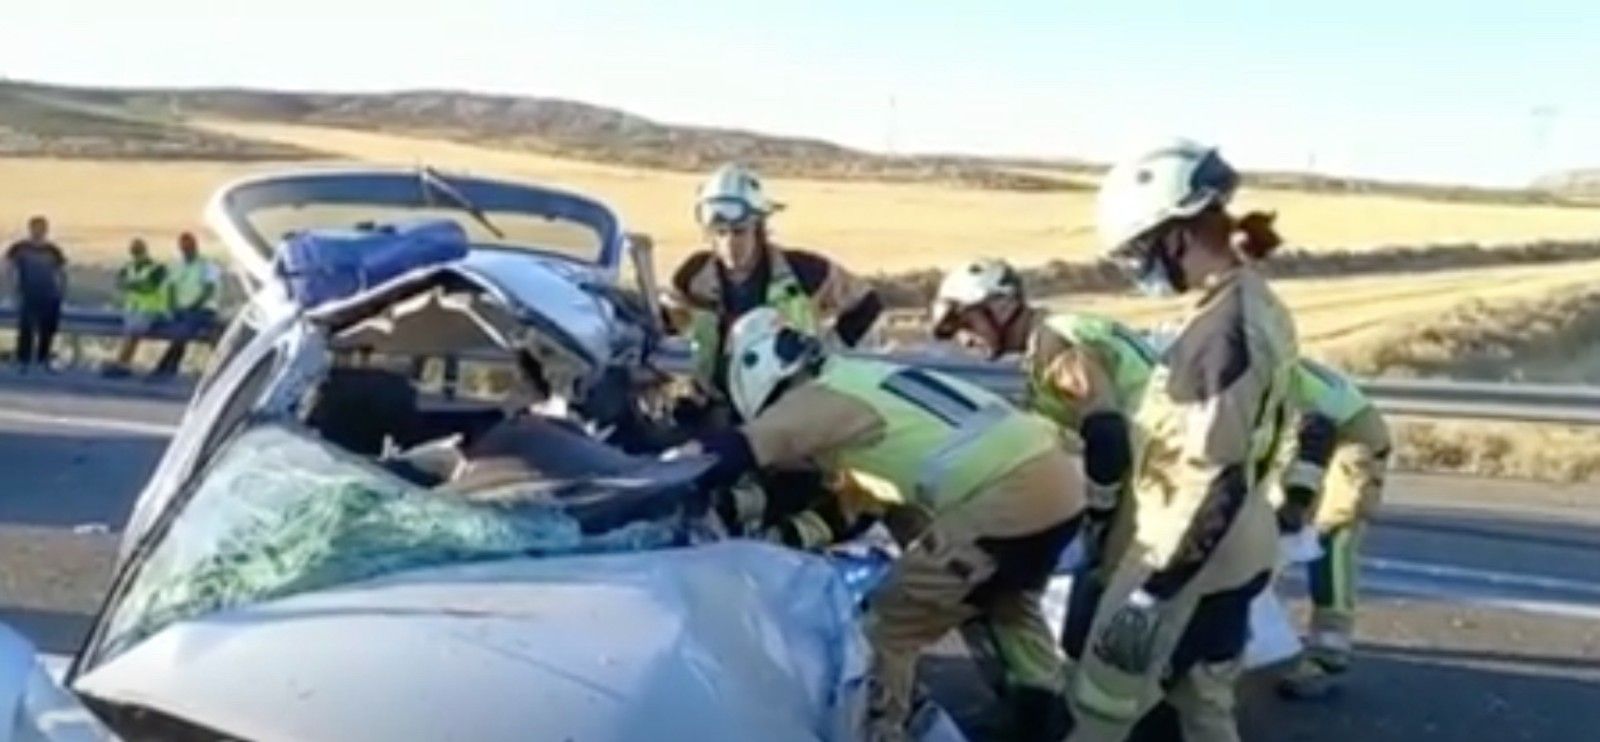 Mueren dos personas al colisionar un camión y un turismo en la AP-2 a la altura de Pina de Ebro